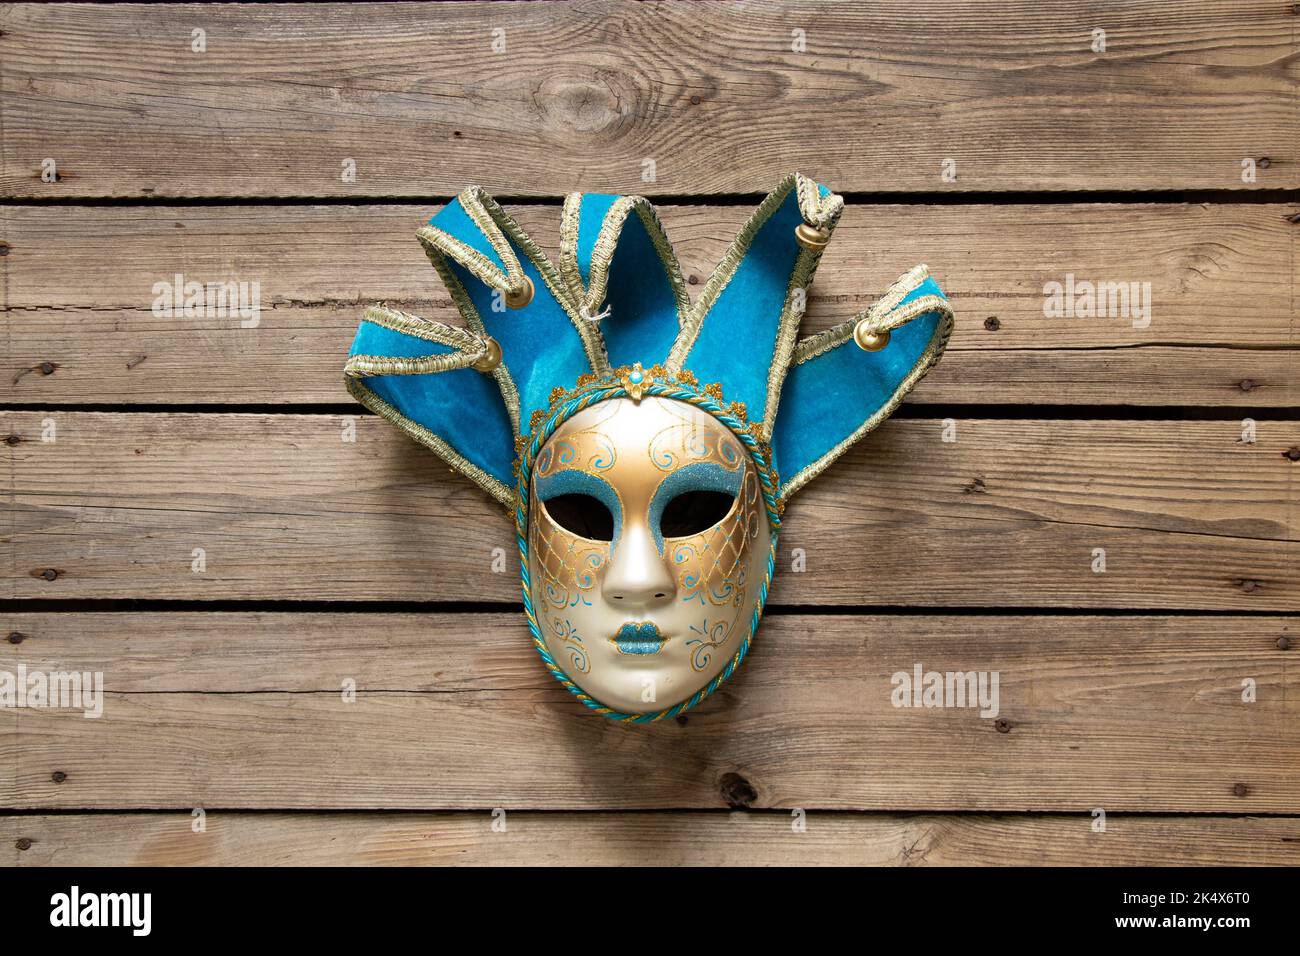 Maschera veneziana si trova su un tavolo di legno, maschera teatrale vintage Foto Stock